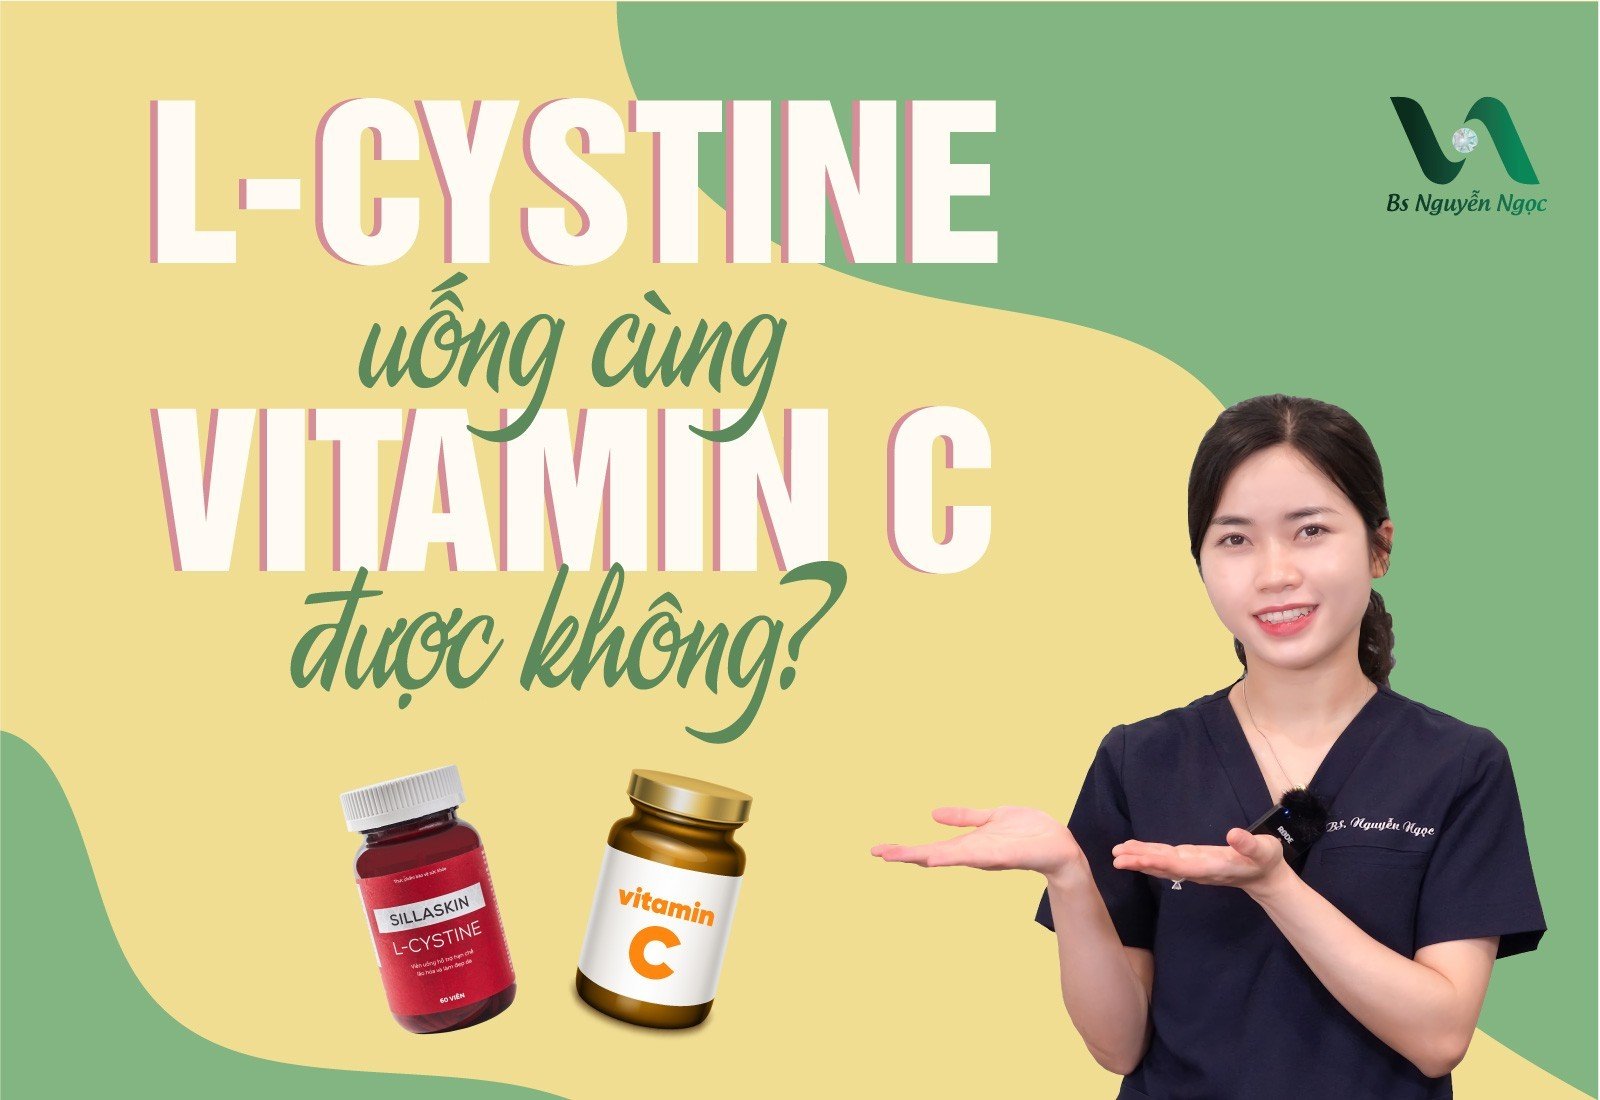 L-cystine uống cùng Vitamin C được không?